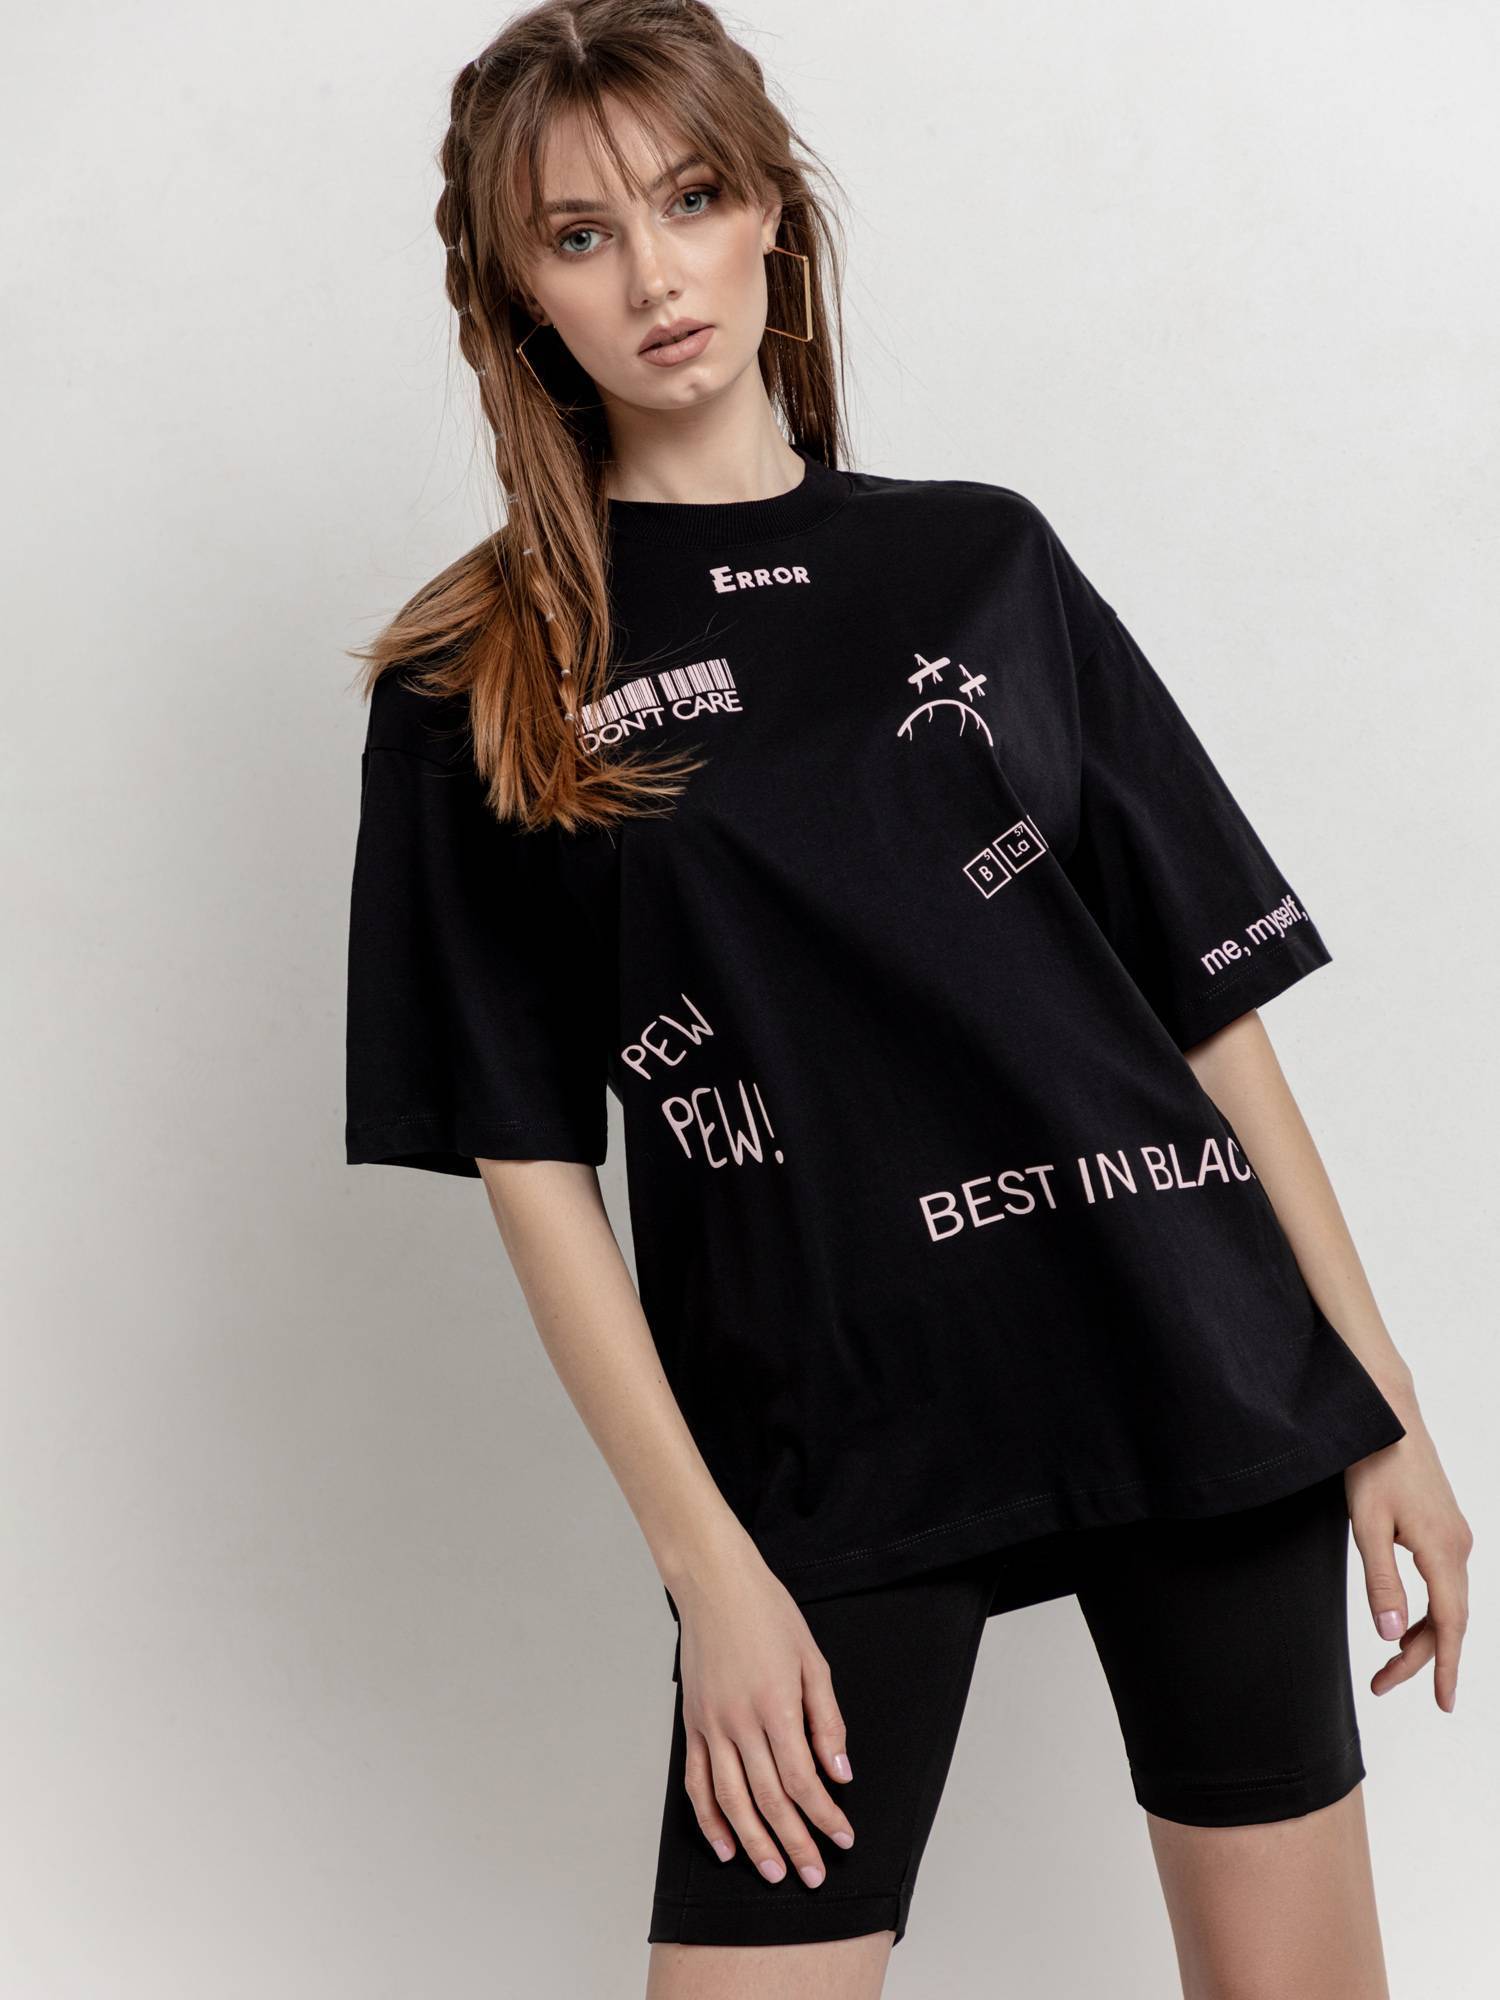 Oversize-футболка с разрезами по бокам «Error» LD 1678 Conte ⭐️, цвет black, размер 170-84/xs